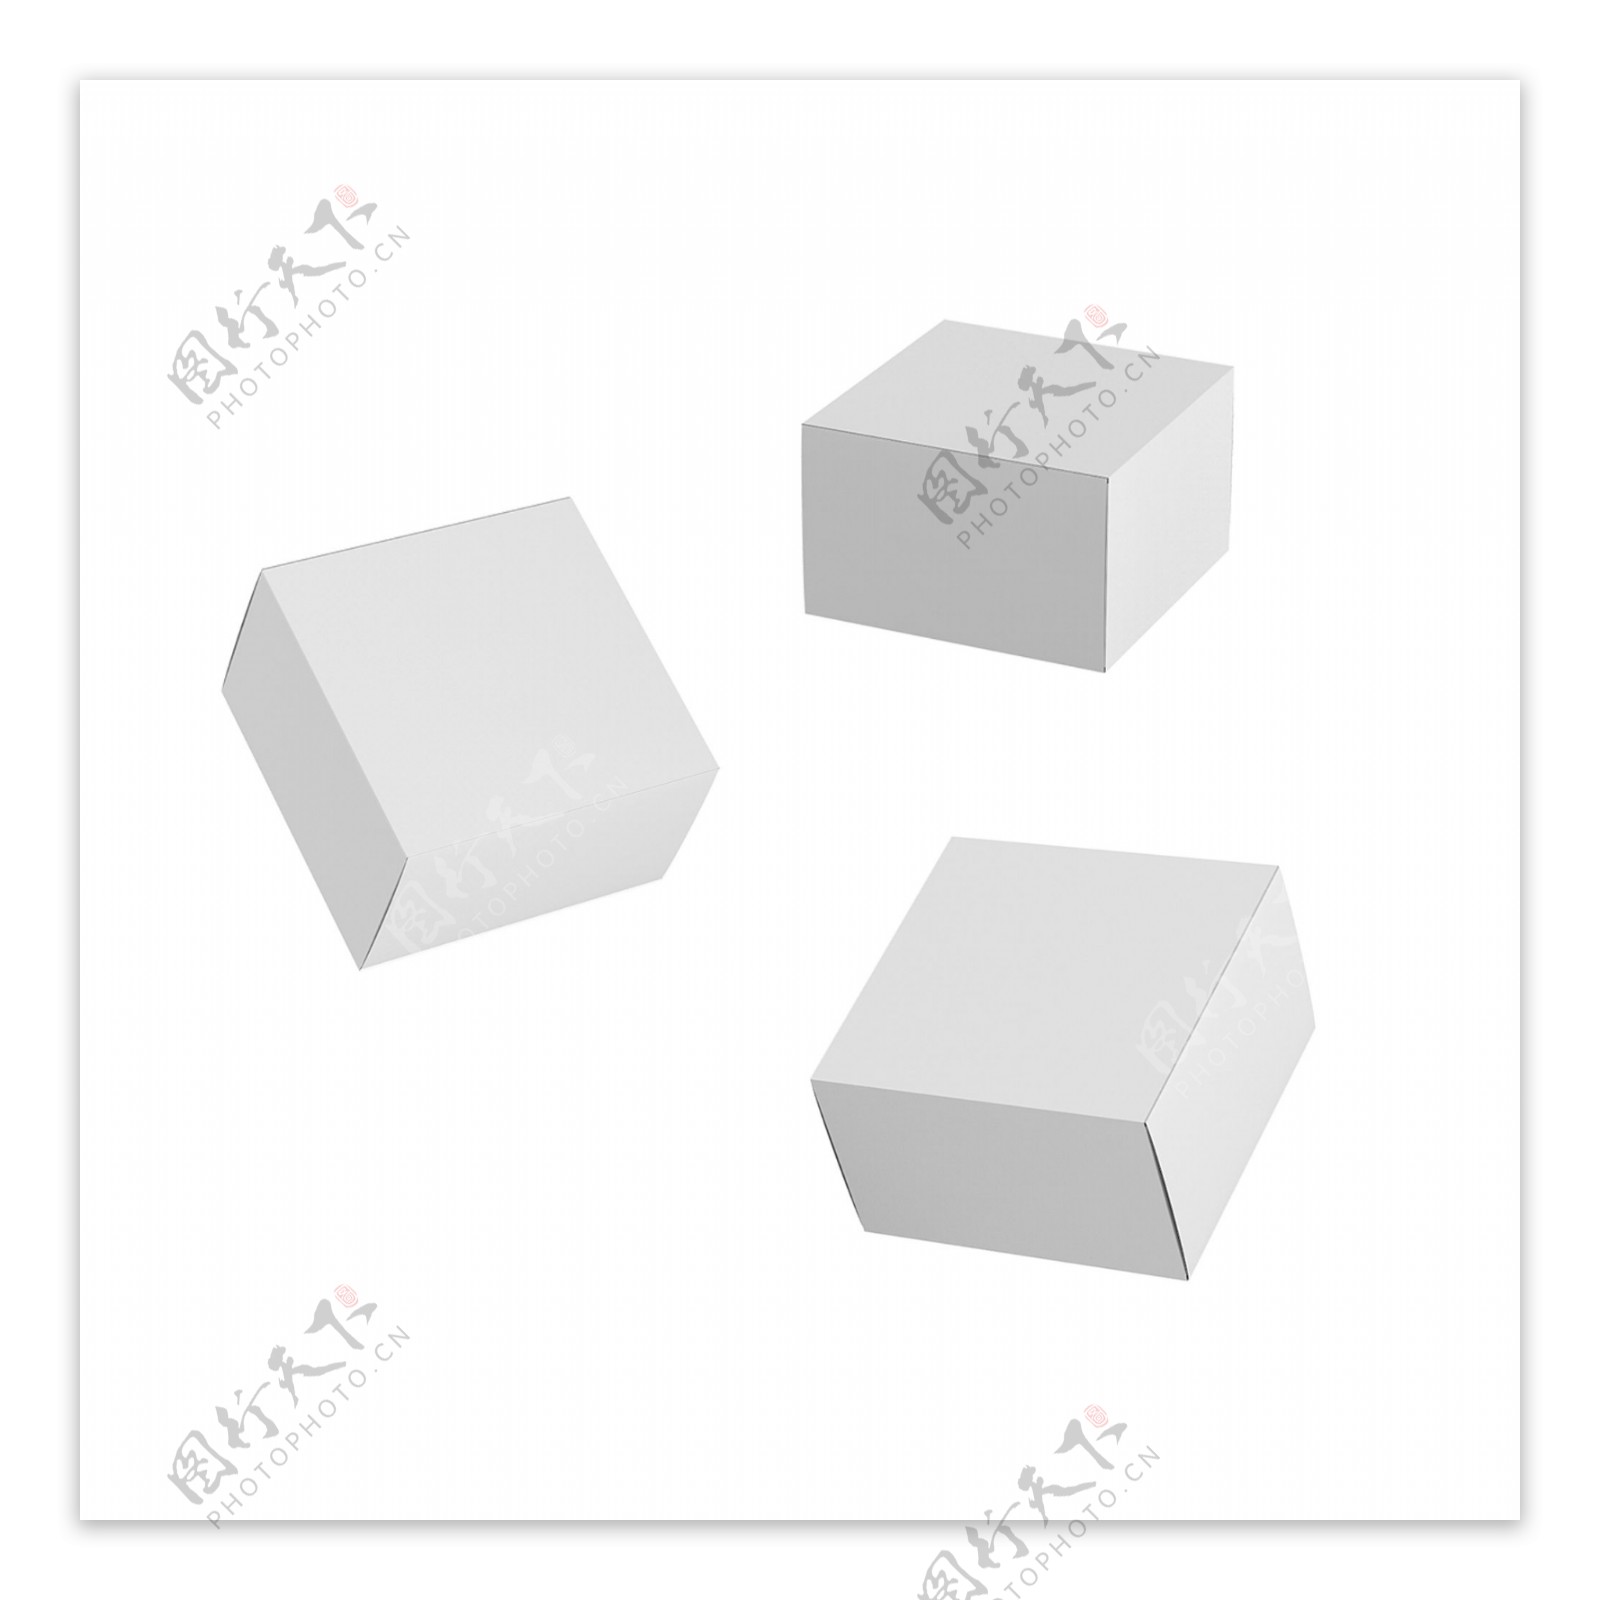 原创白色空白方盒子纸盒立体空间素材